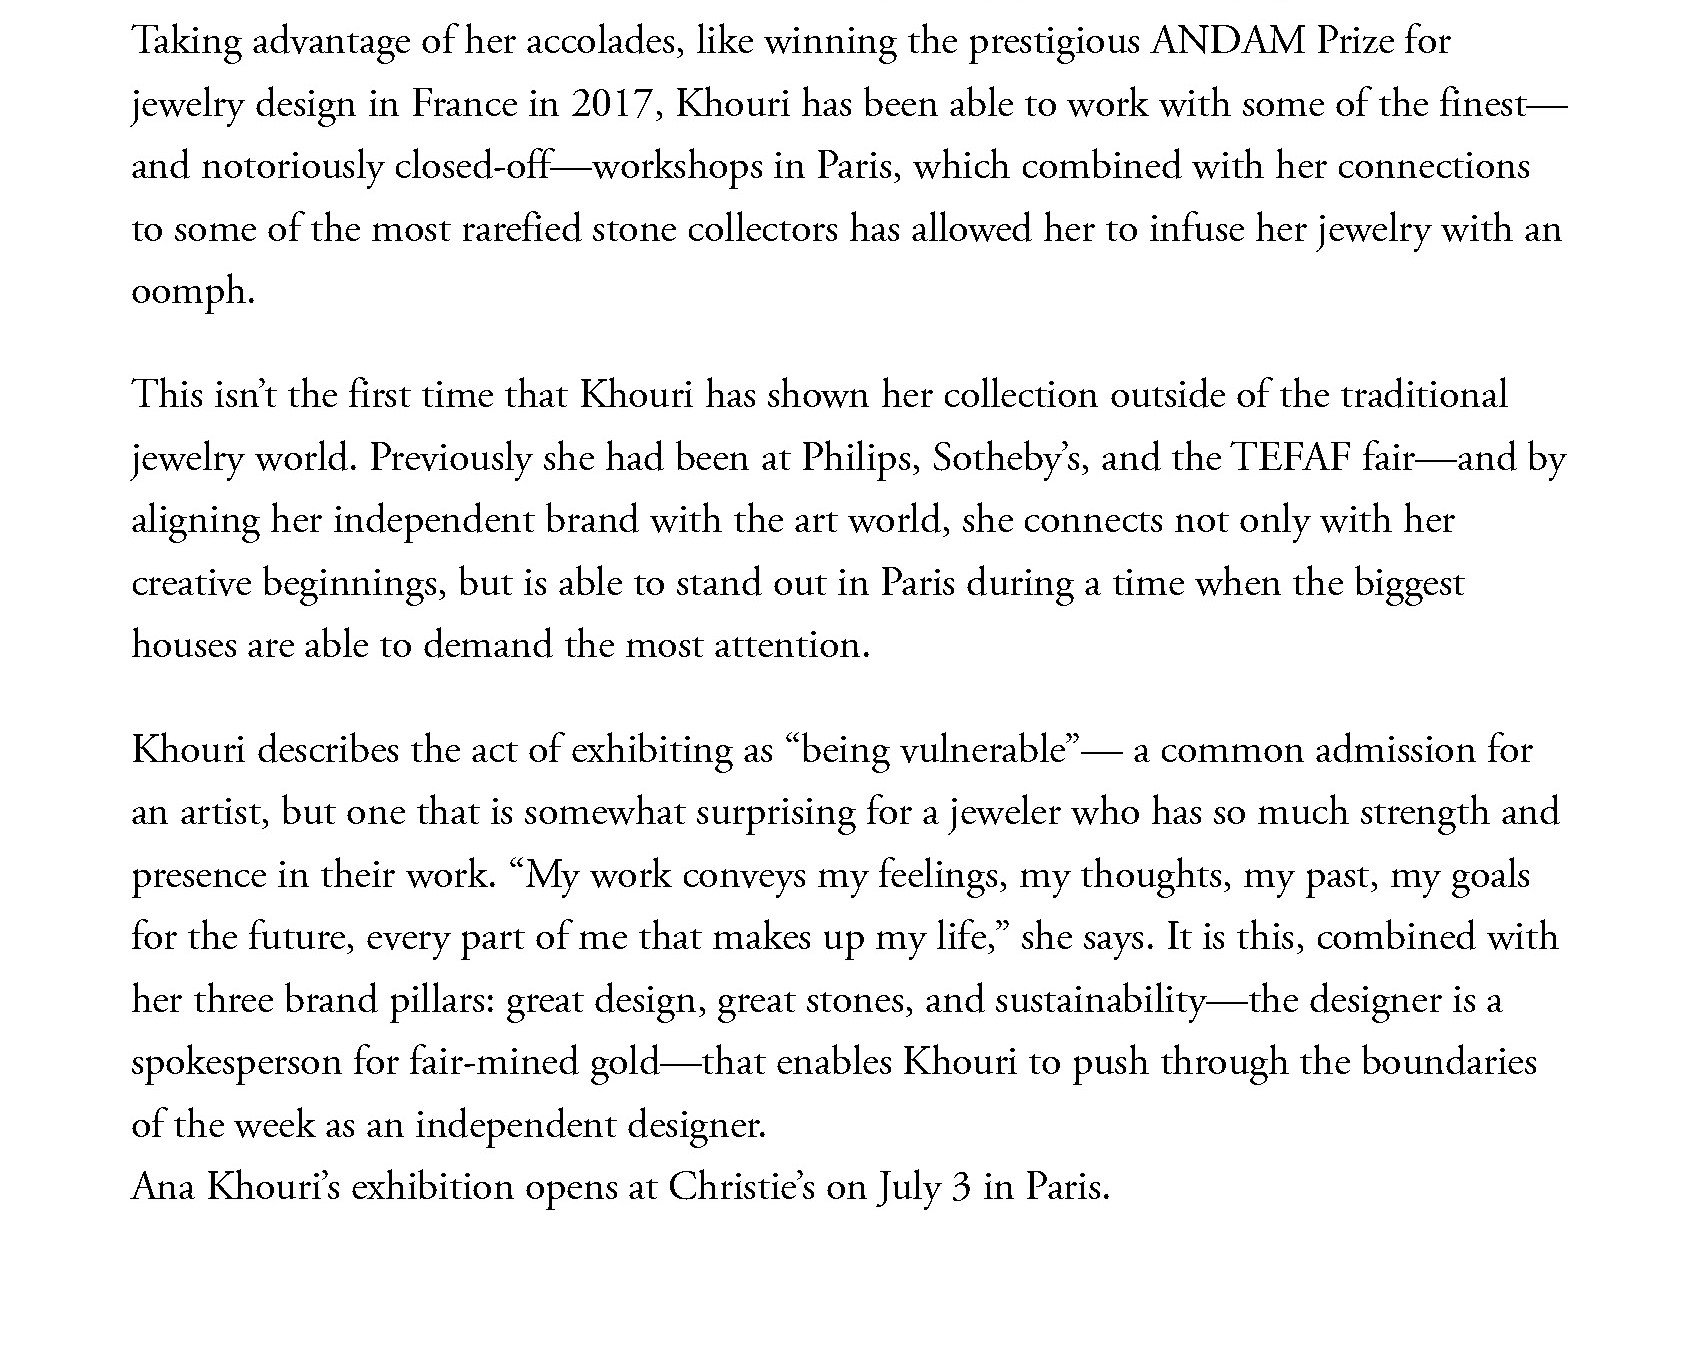 Vogue.com July 2023 Ana Khouri at Christie's Paris 3.jpg